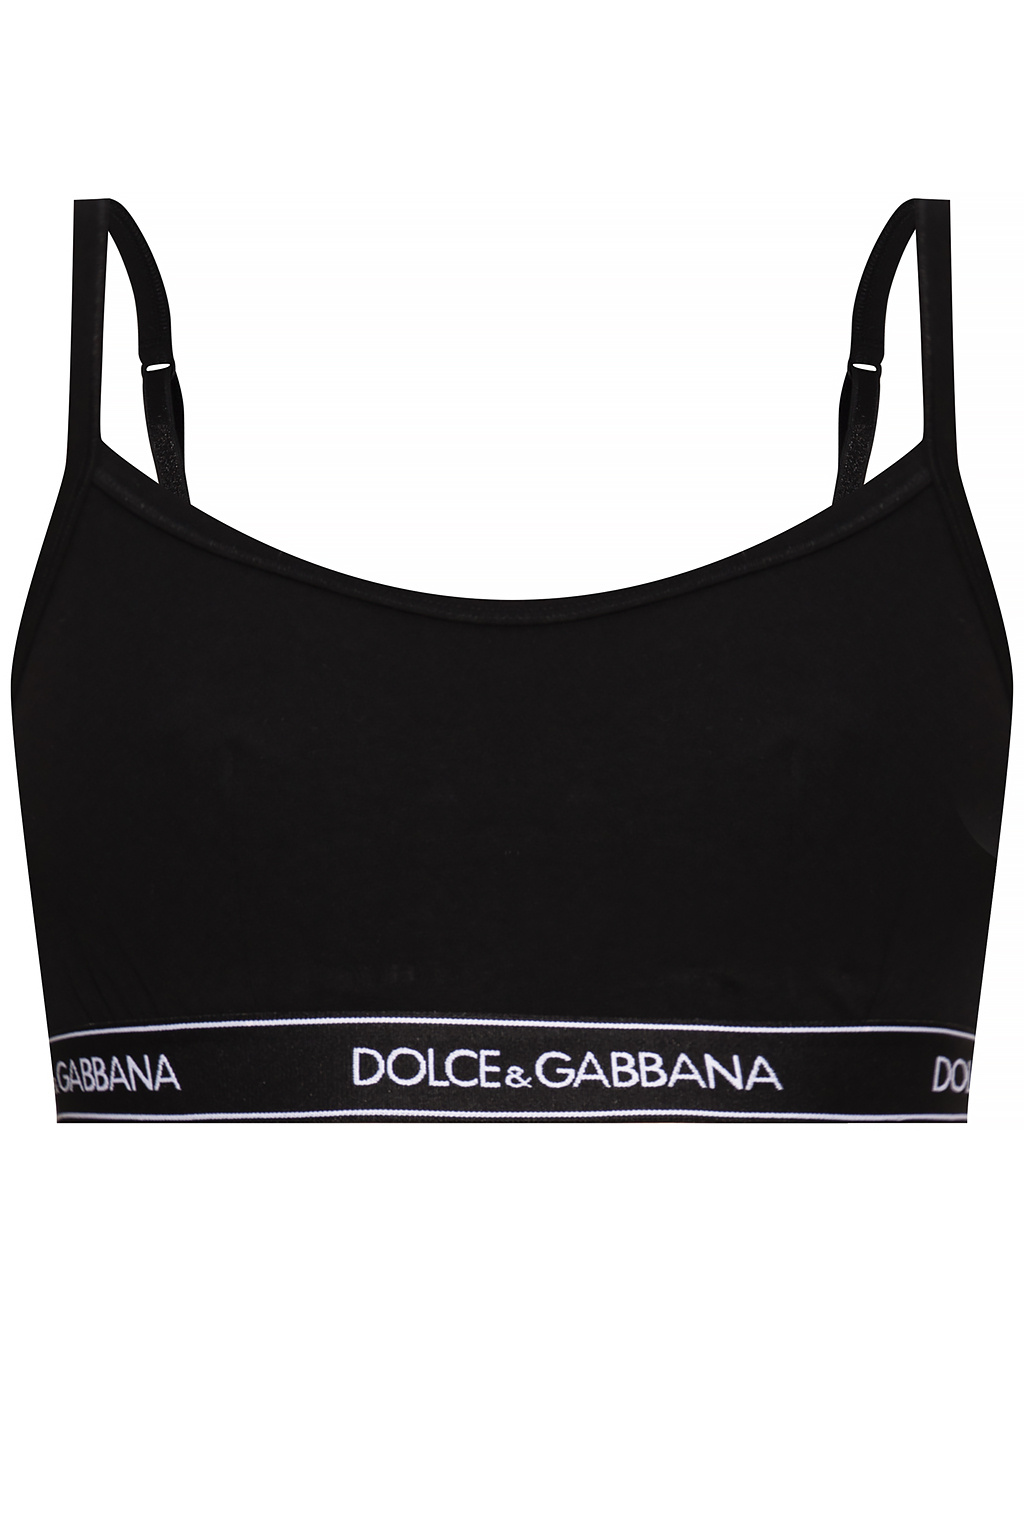 Dolce & Gabbana Bra with logo